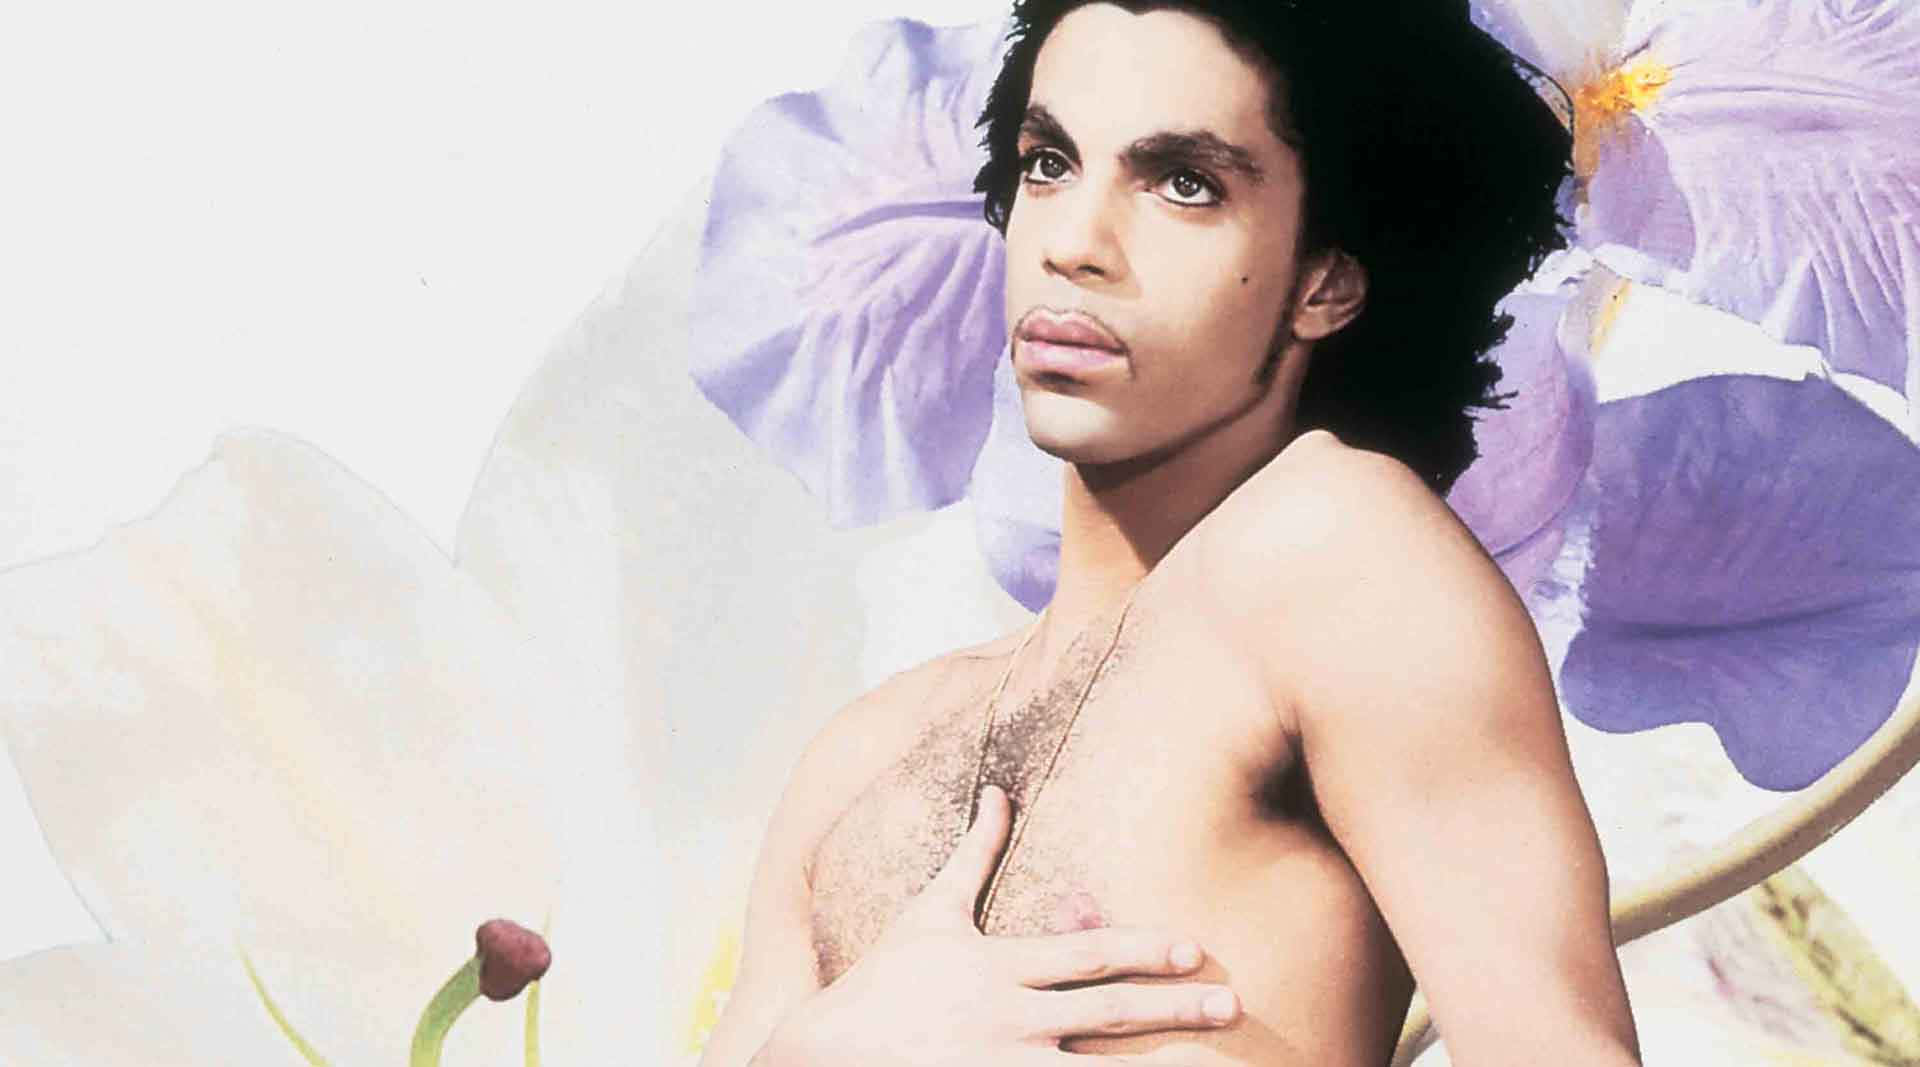 Feiernden Legendären Künstler Prince.